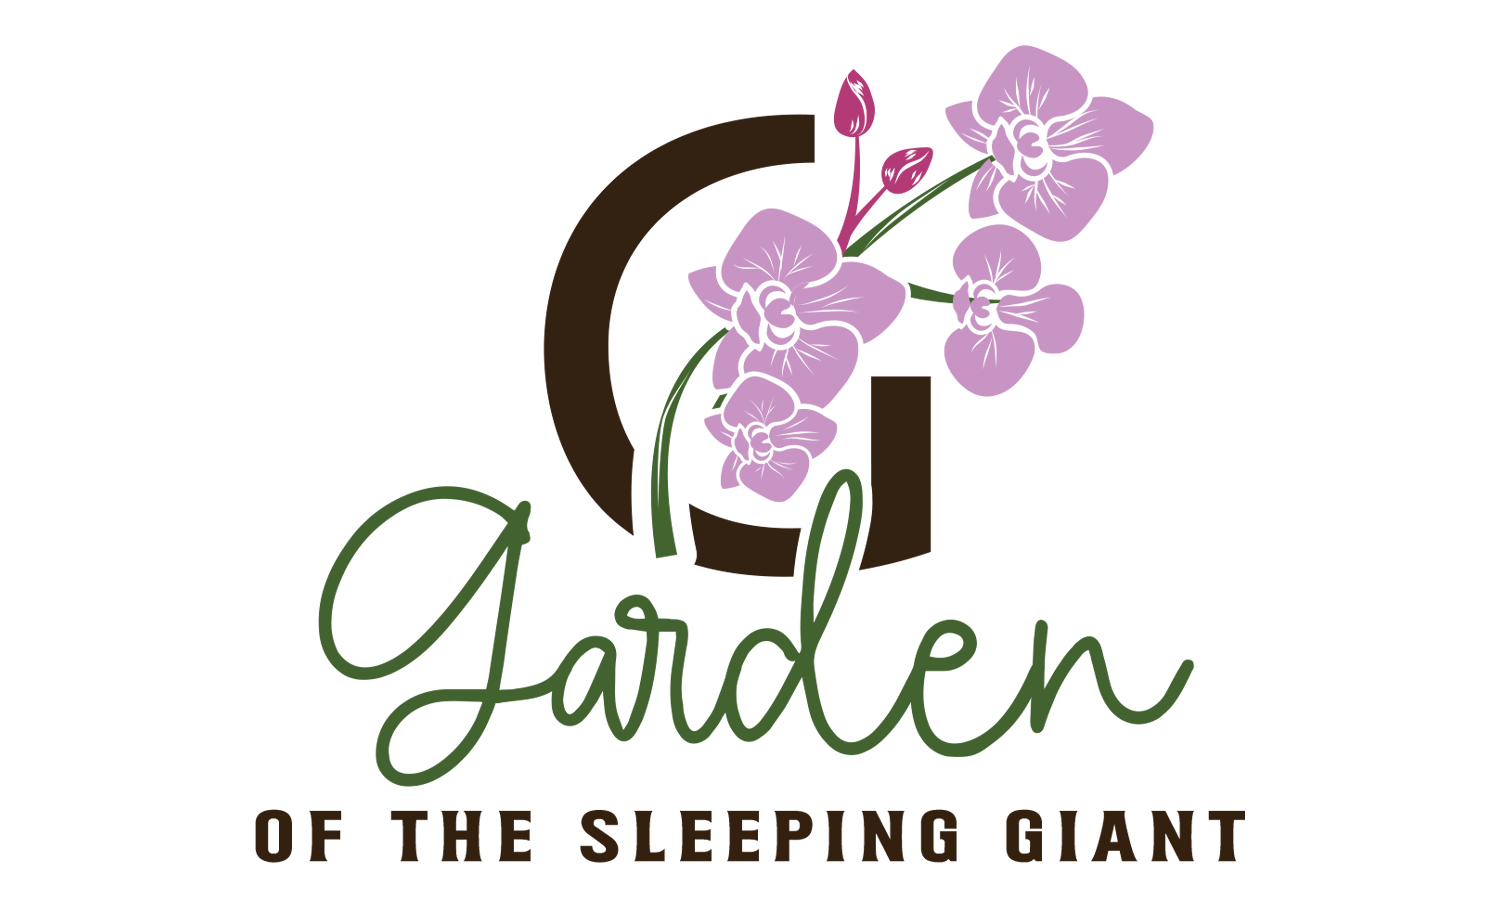 Garden of the Sleeping Giant